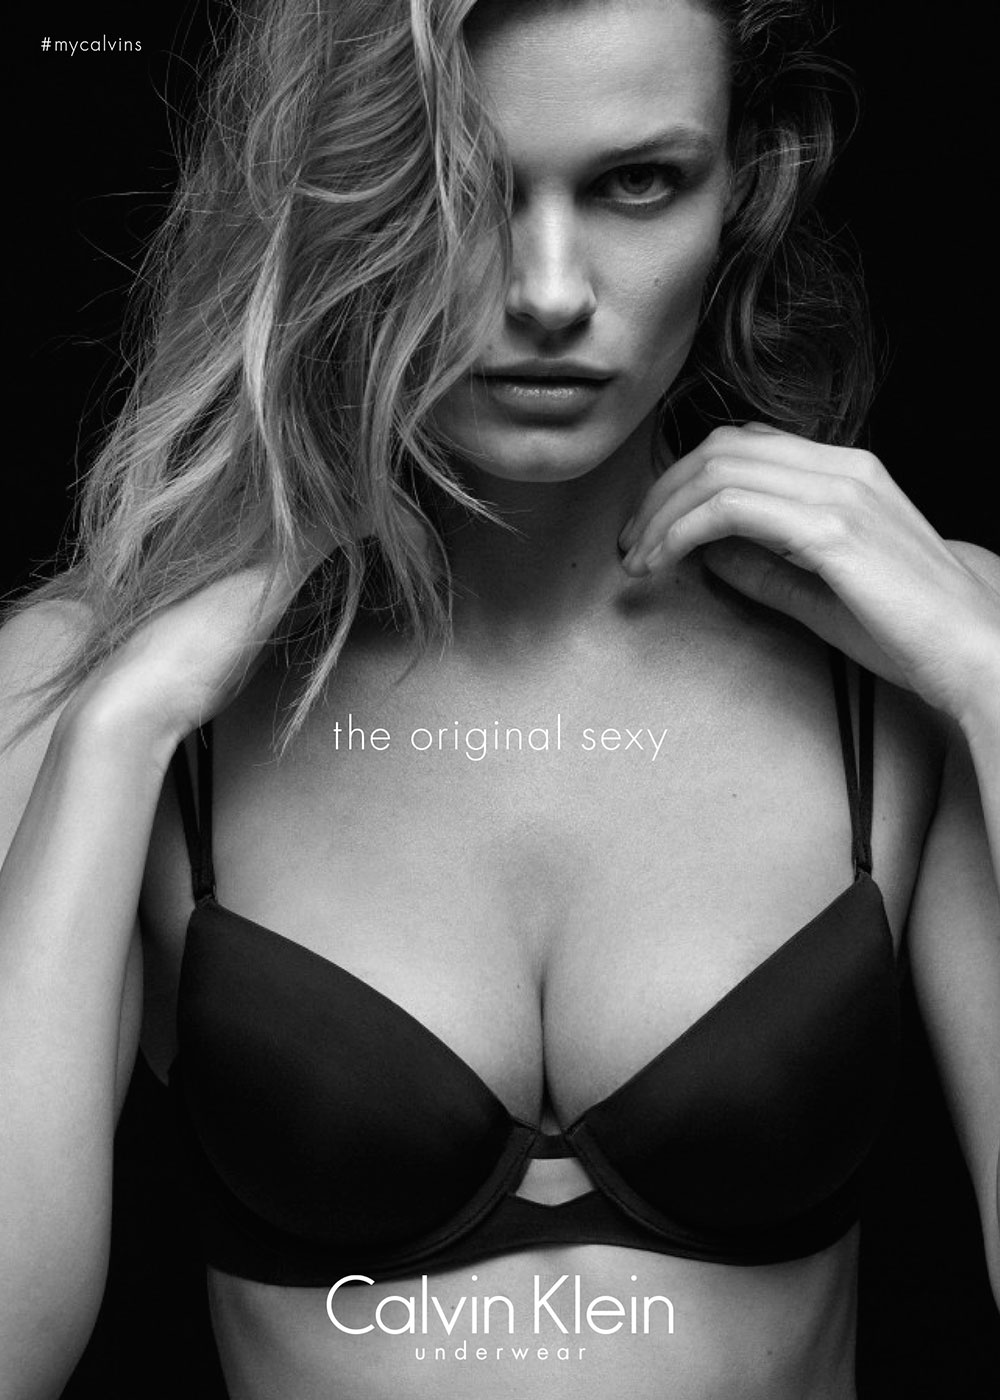 Edita Vilkeviciute in the new Calvin Klein Underwear campaign